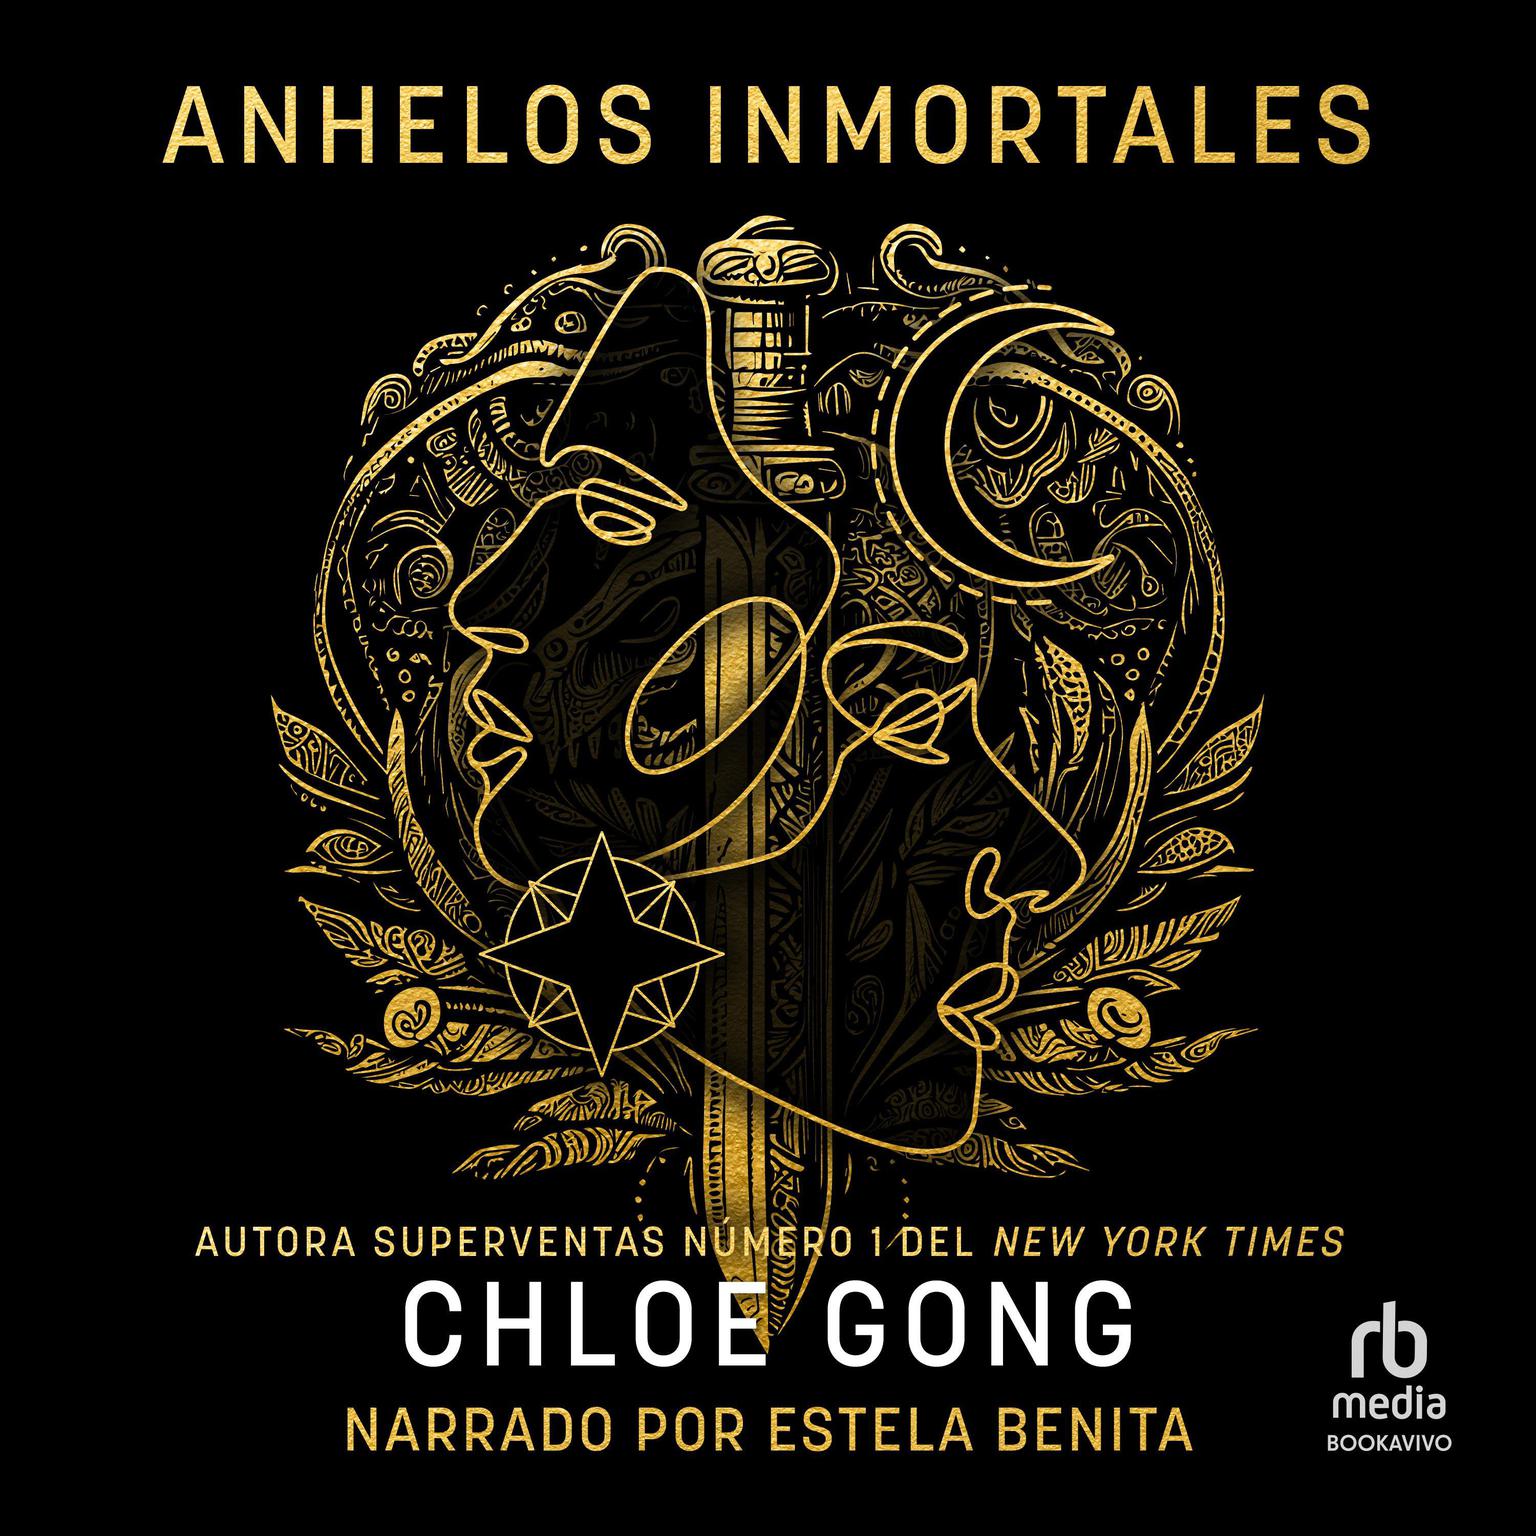 Anhelos inmortales (Immortal Longings) Audiobook, by Chloe Gong